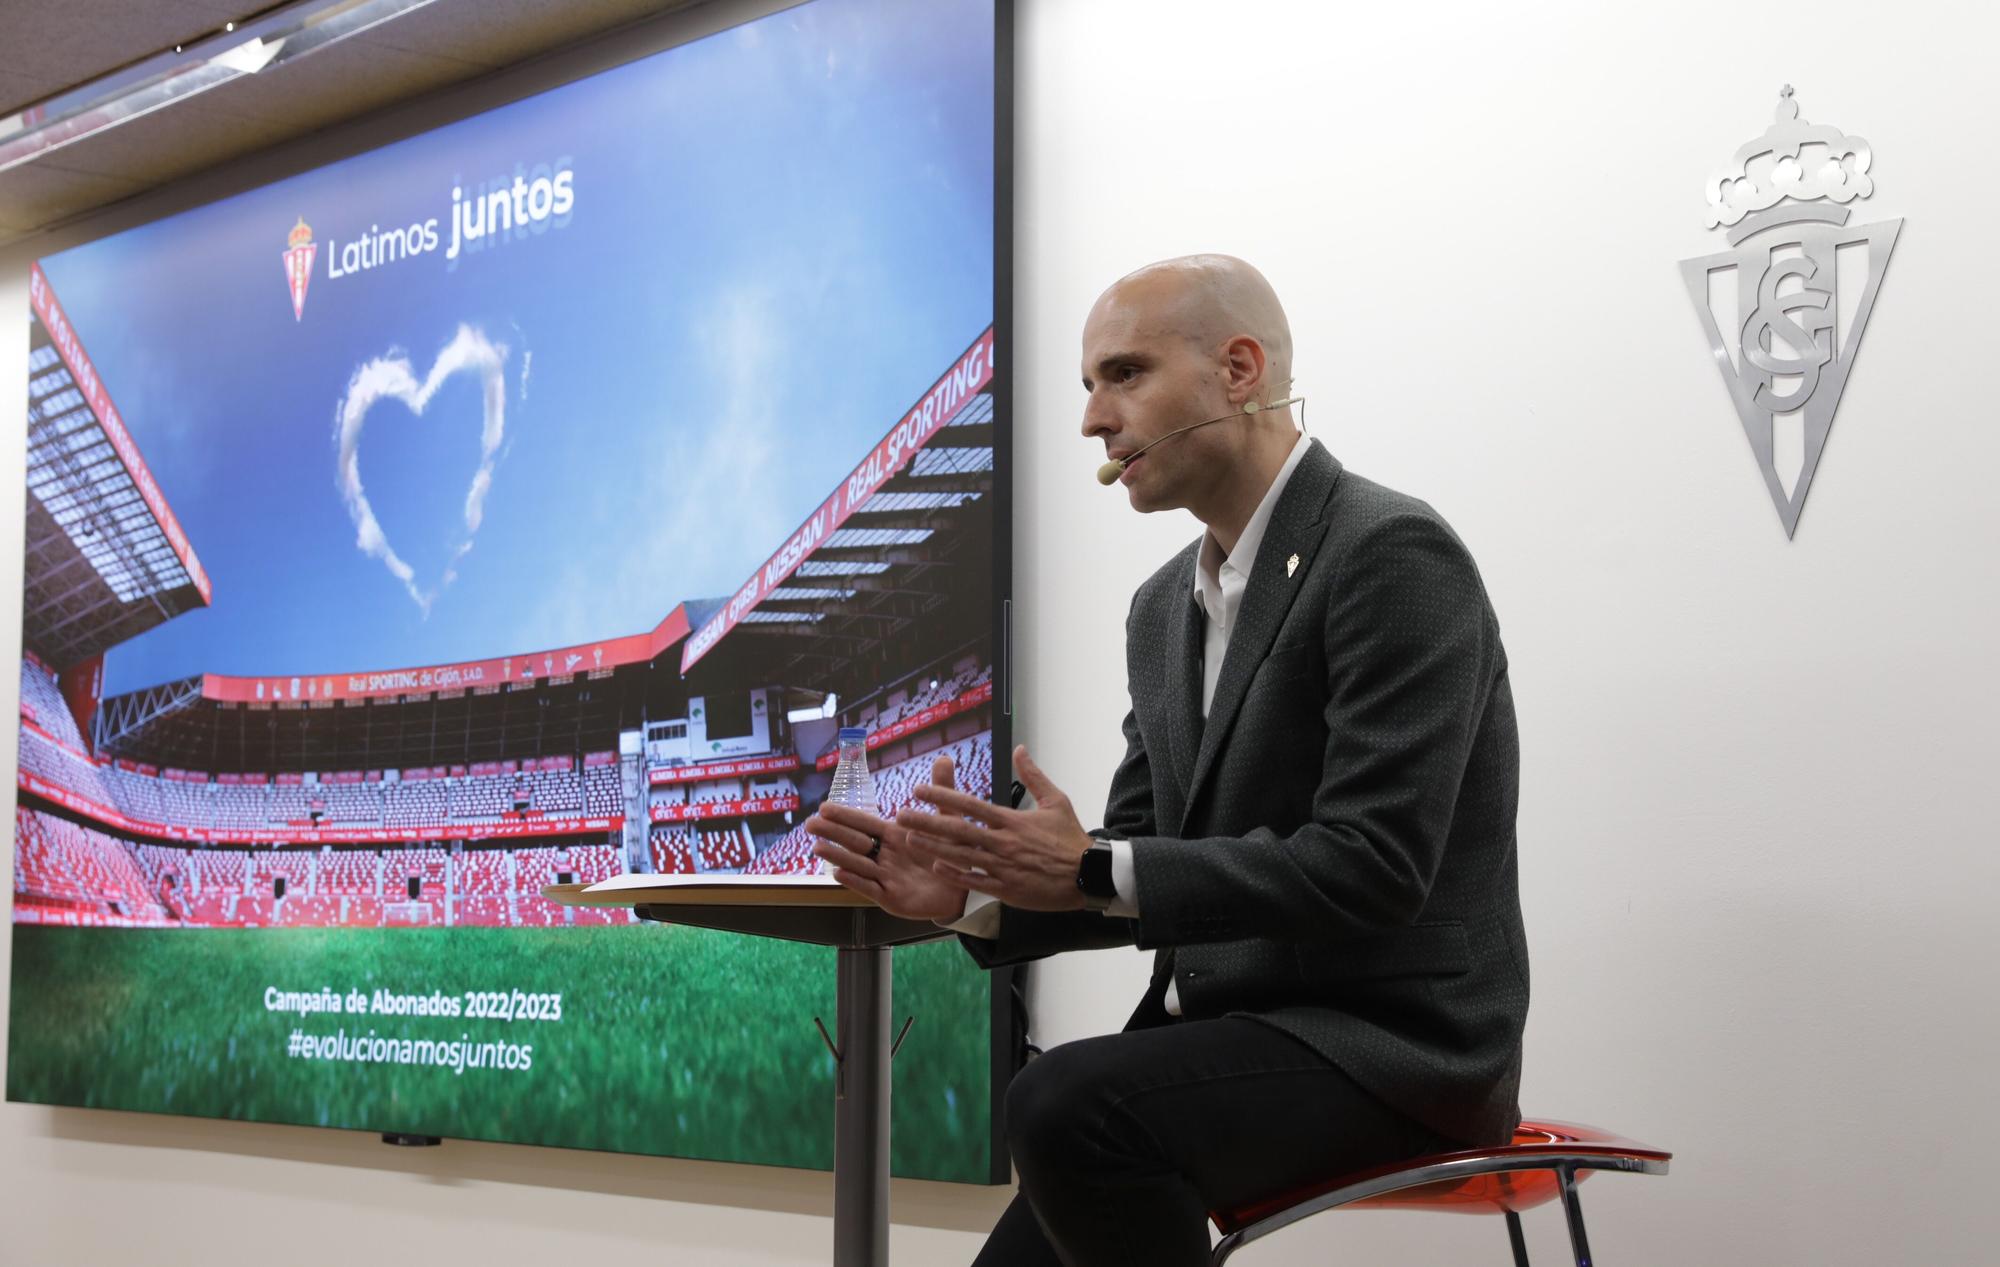 David Guerra presenta la nueva campaña de abonados del Sporting de Gijón